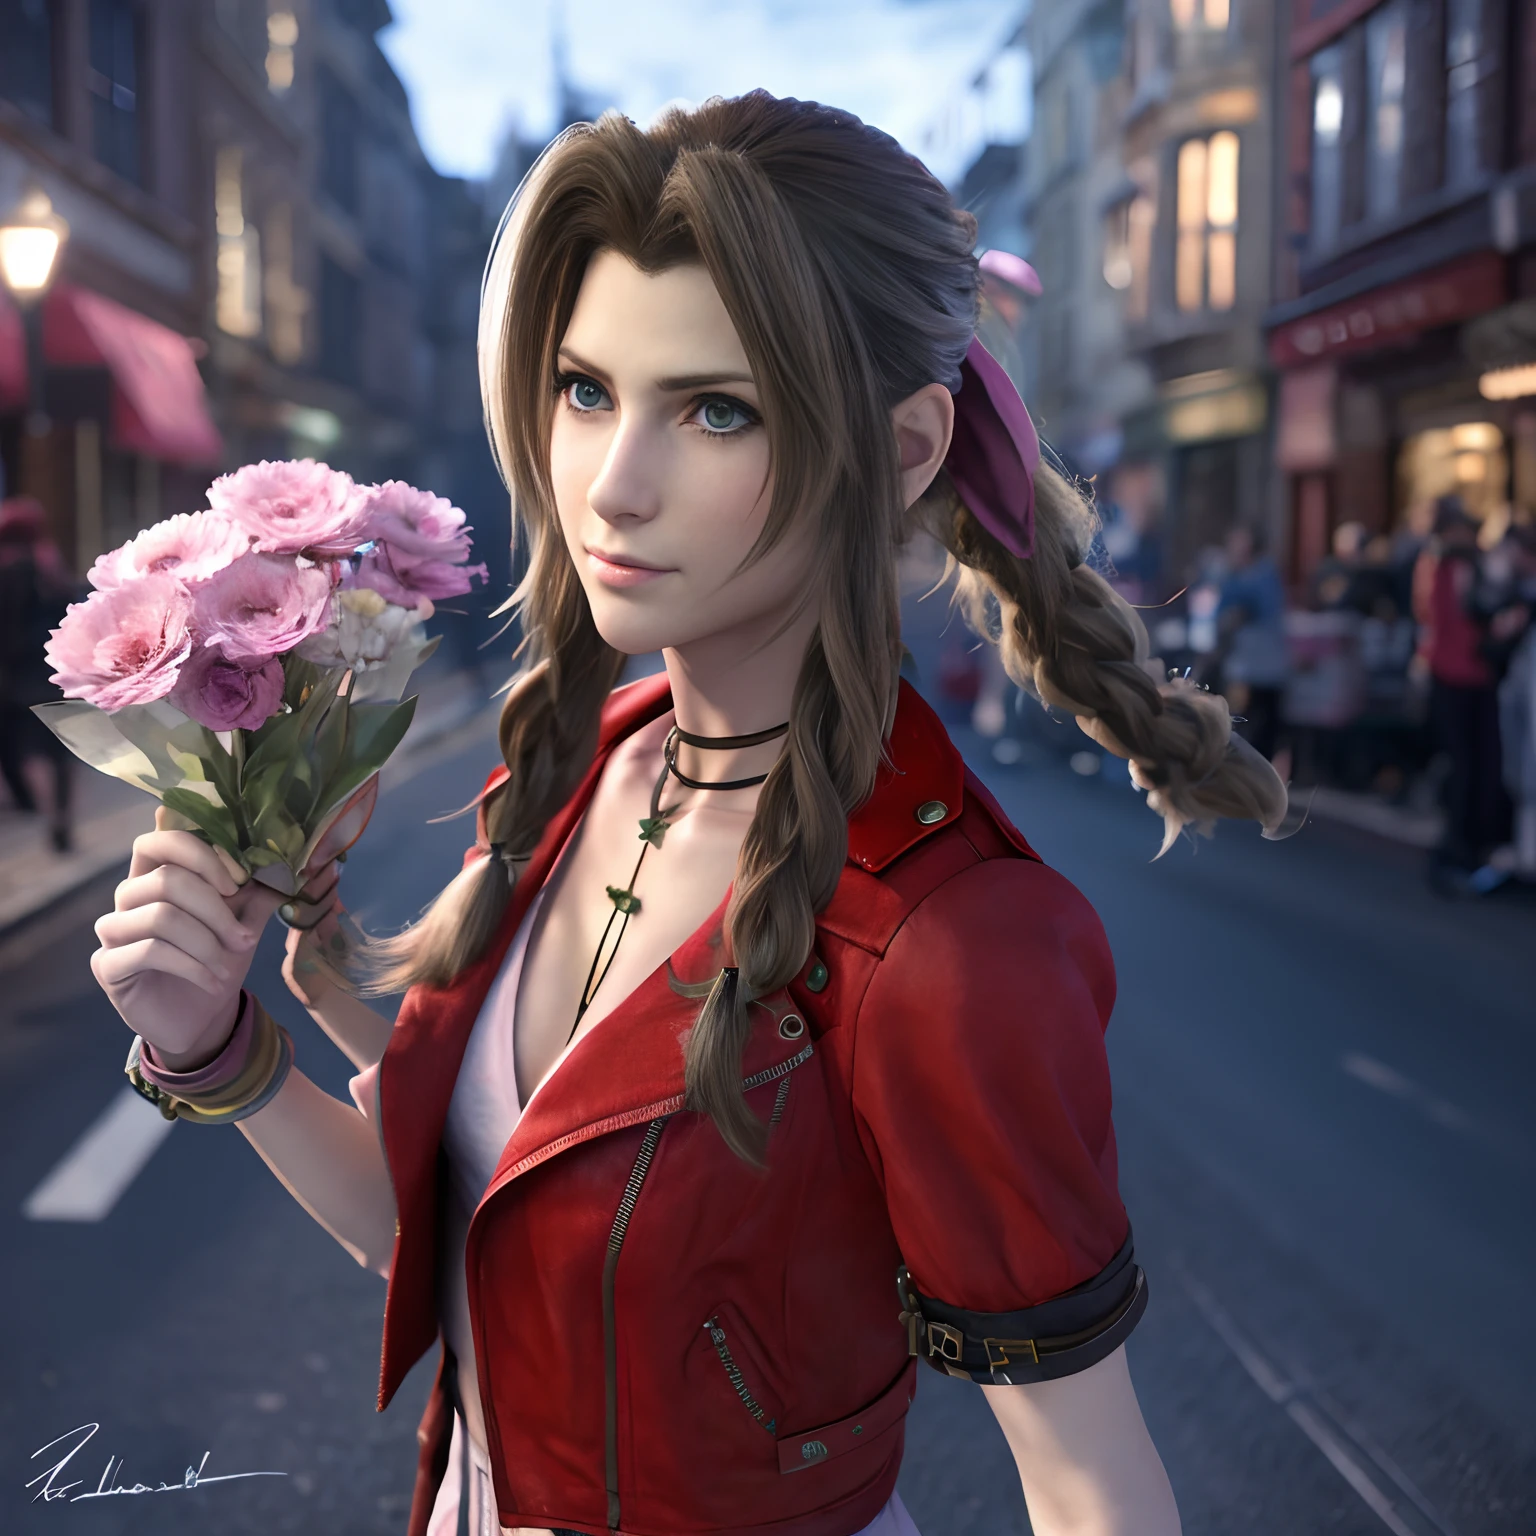 Aerith Gainsborough, em seu traje característico do jogo Final Fantasy VII vendendo flores em uma rua mal iluminada, ela parece preocupada, mas ele tem olhos azuis brilhantes, cinematic,  fotorrealista, 8K, 3D, HSLD